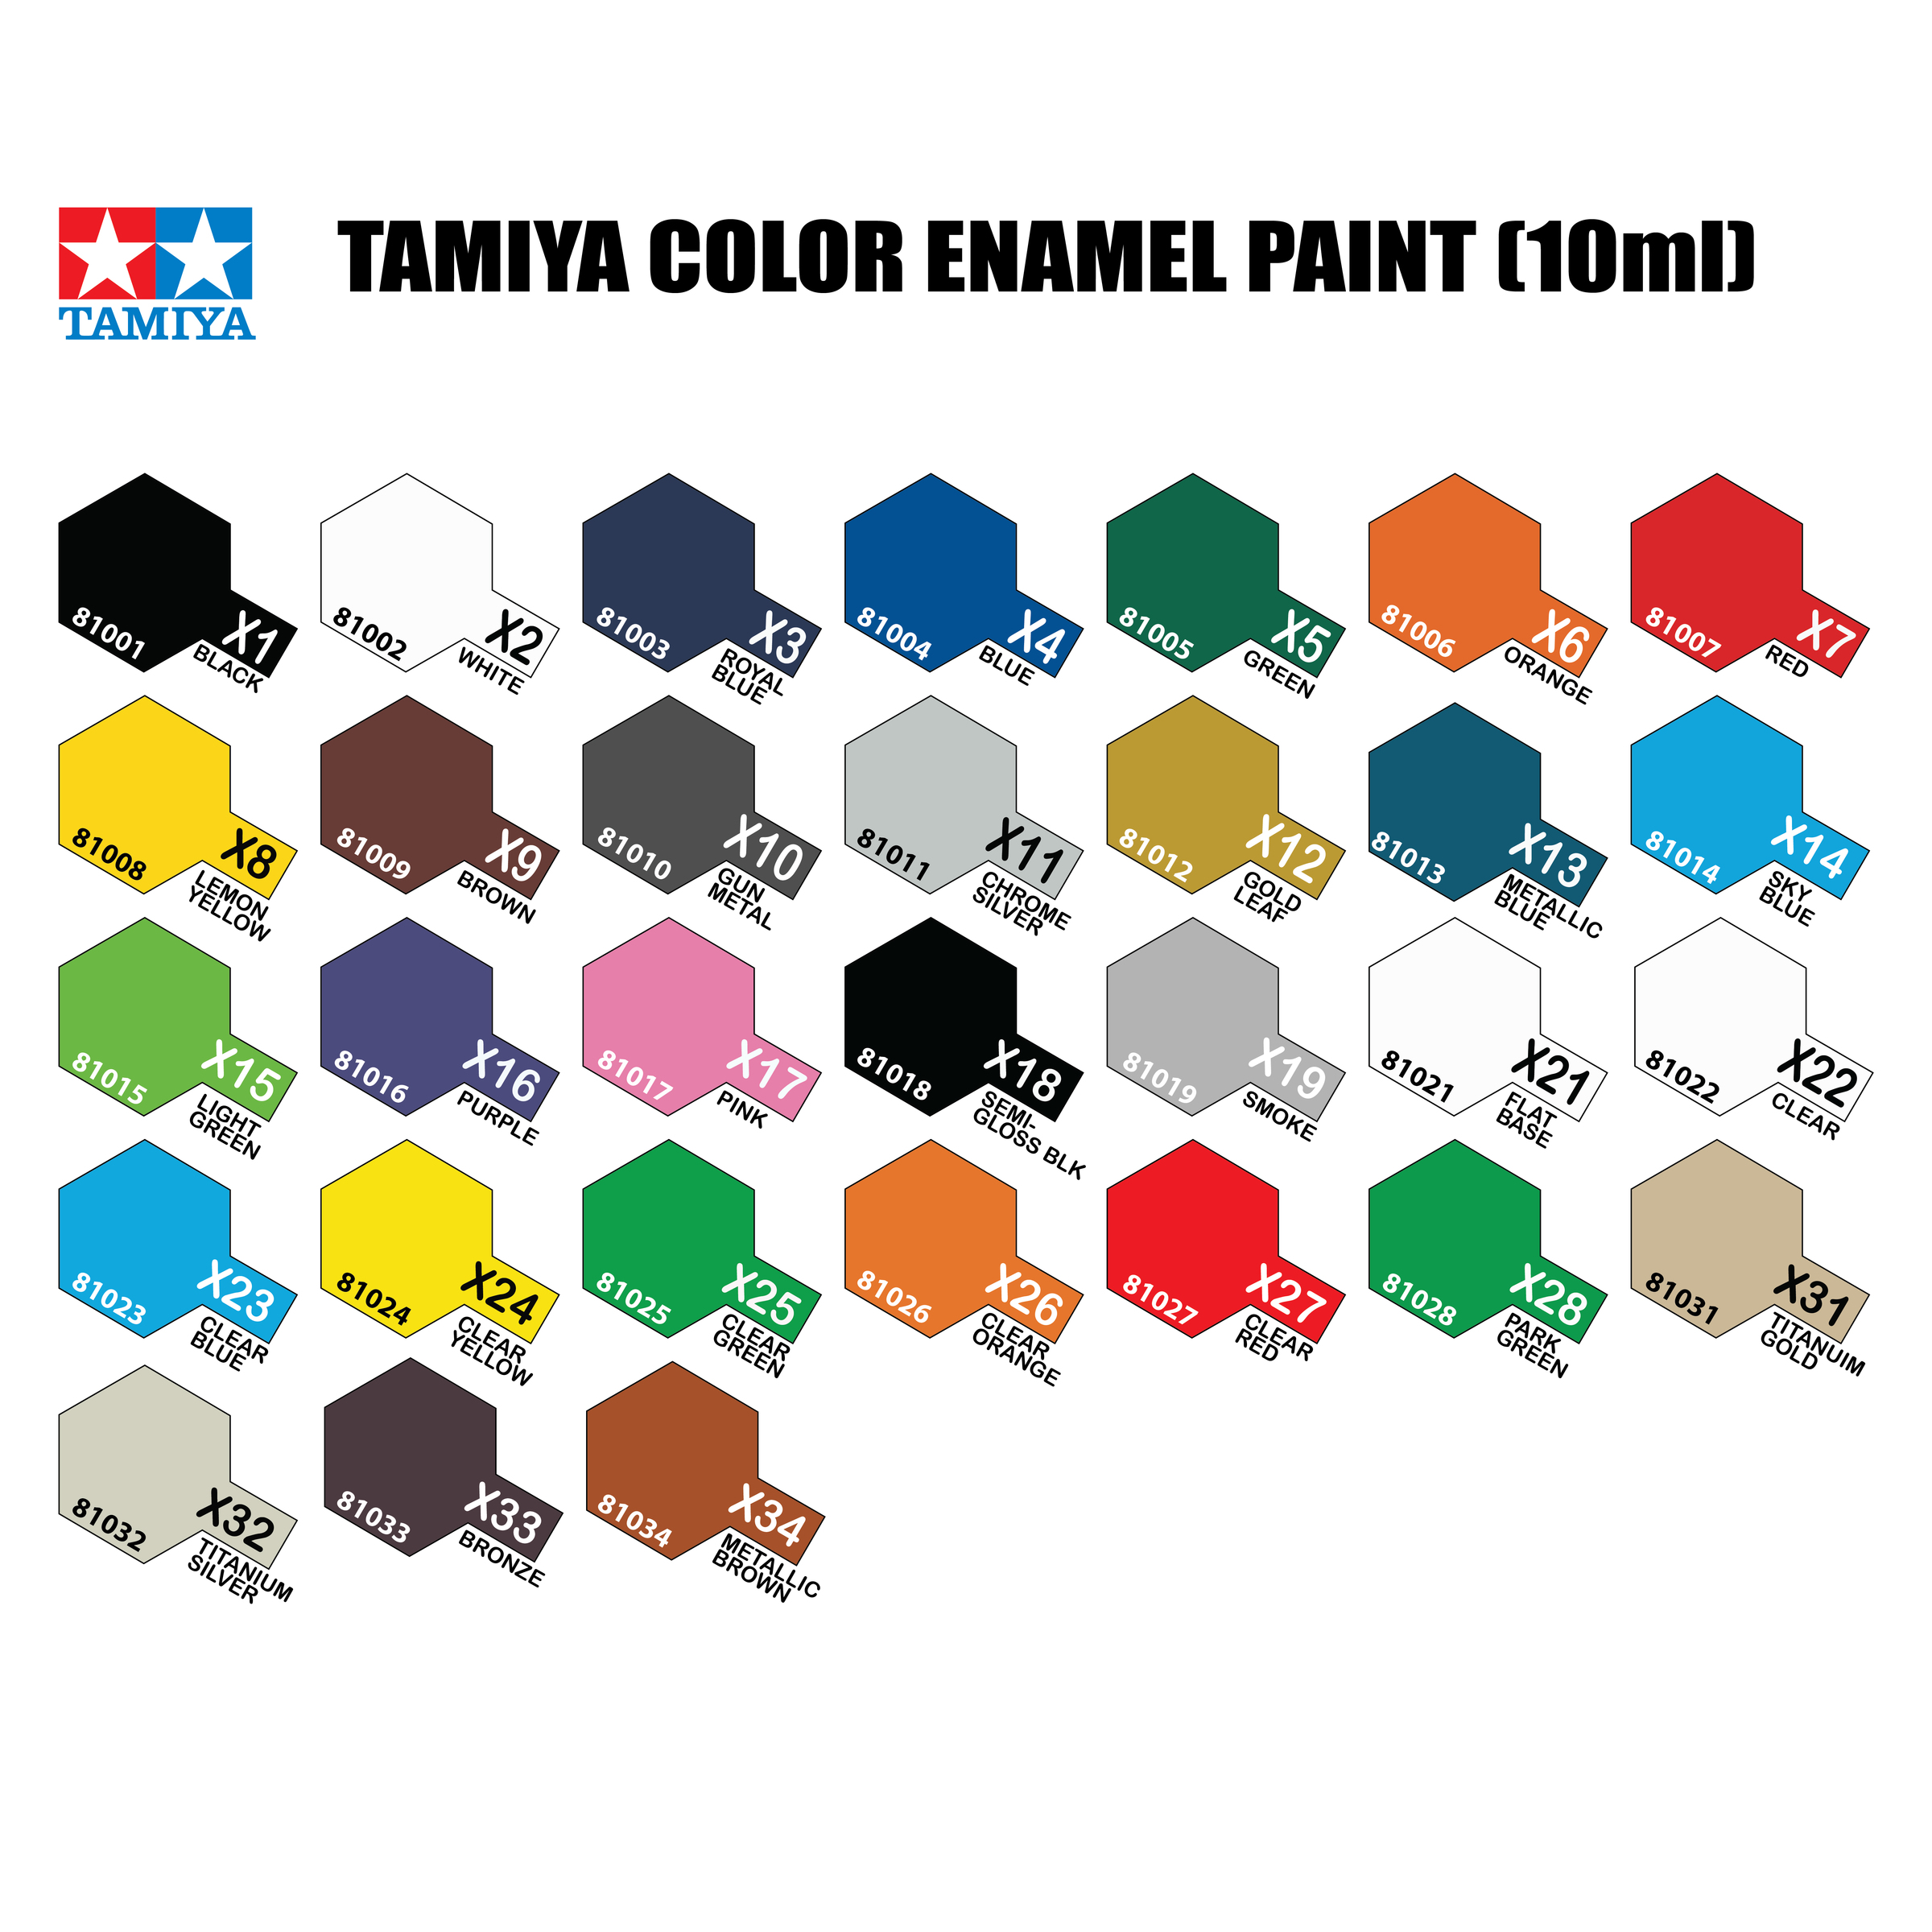 Tamiya Paint Chart